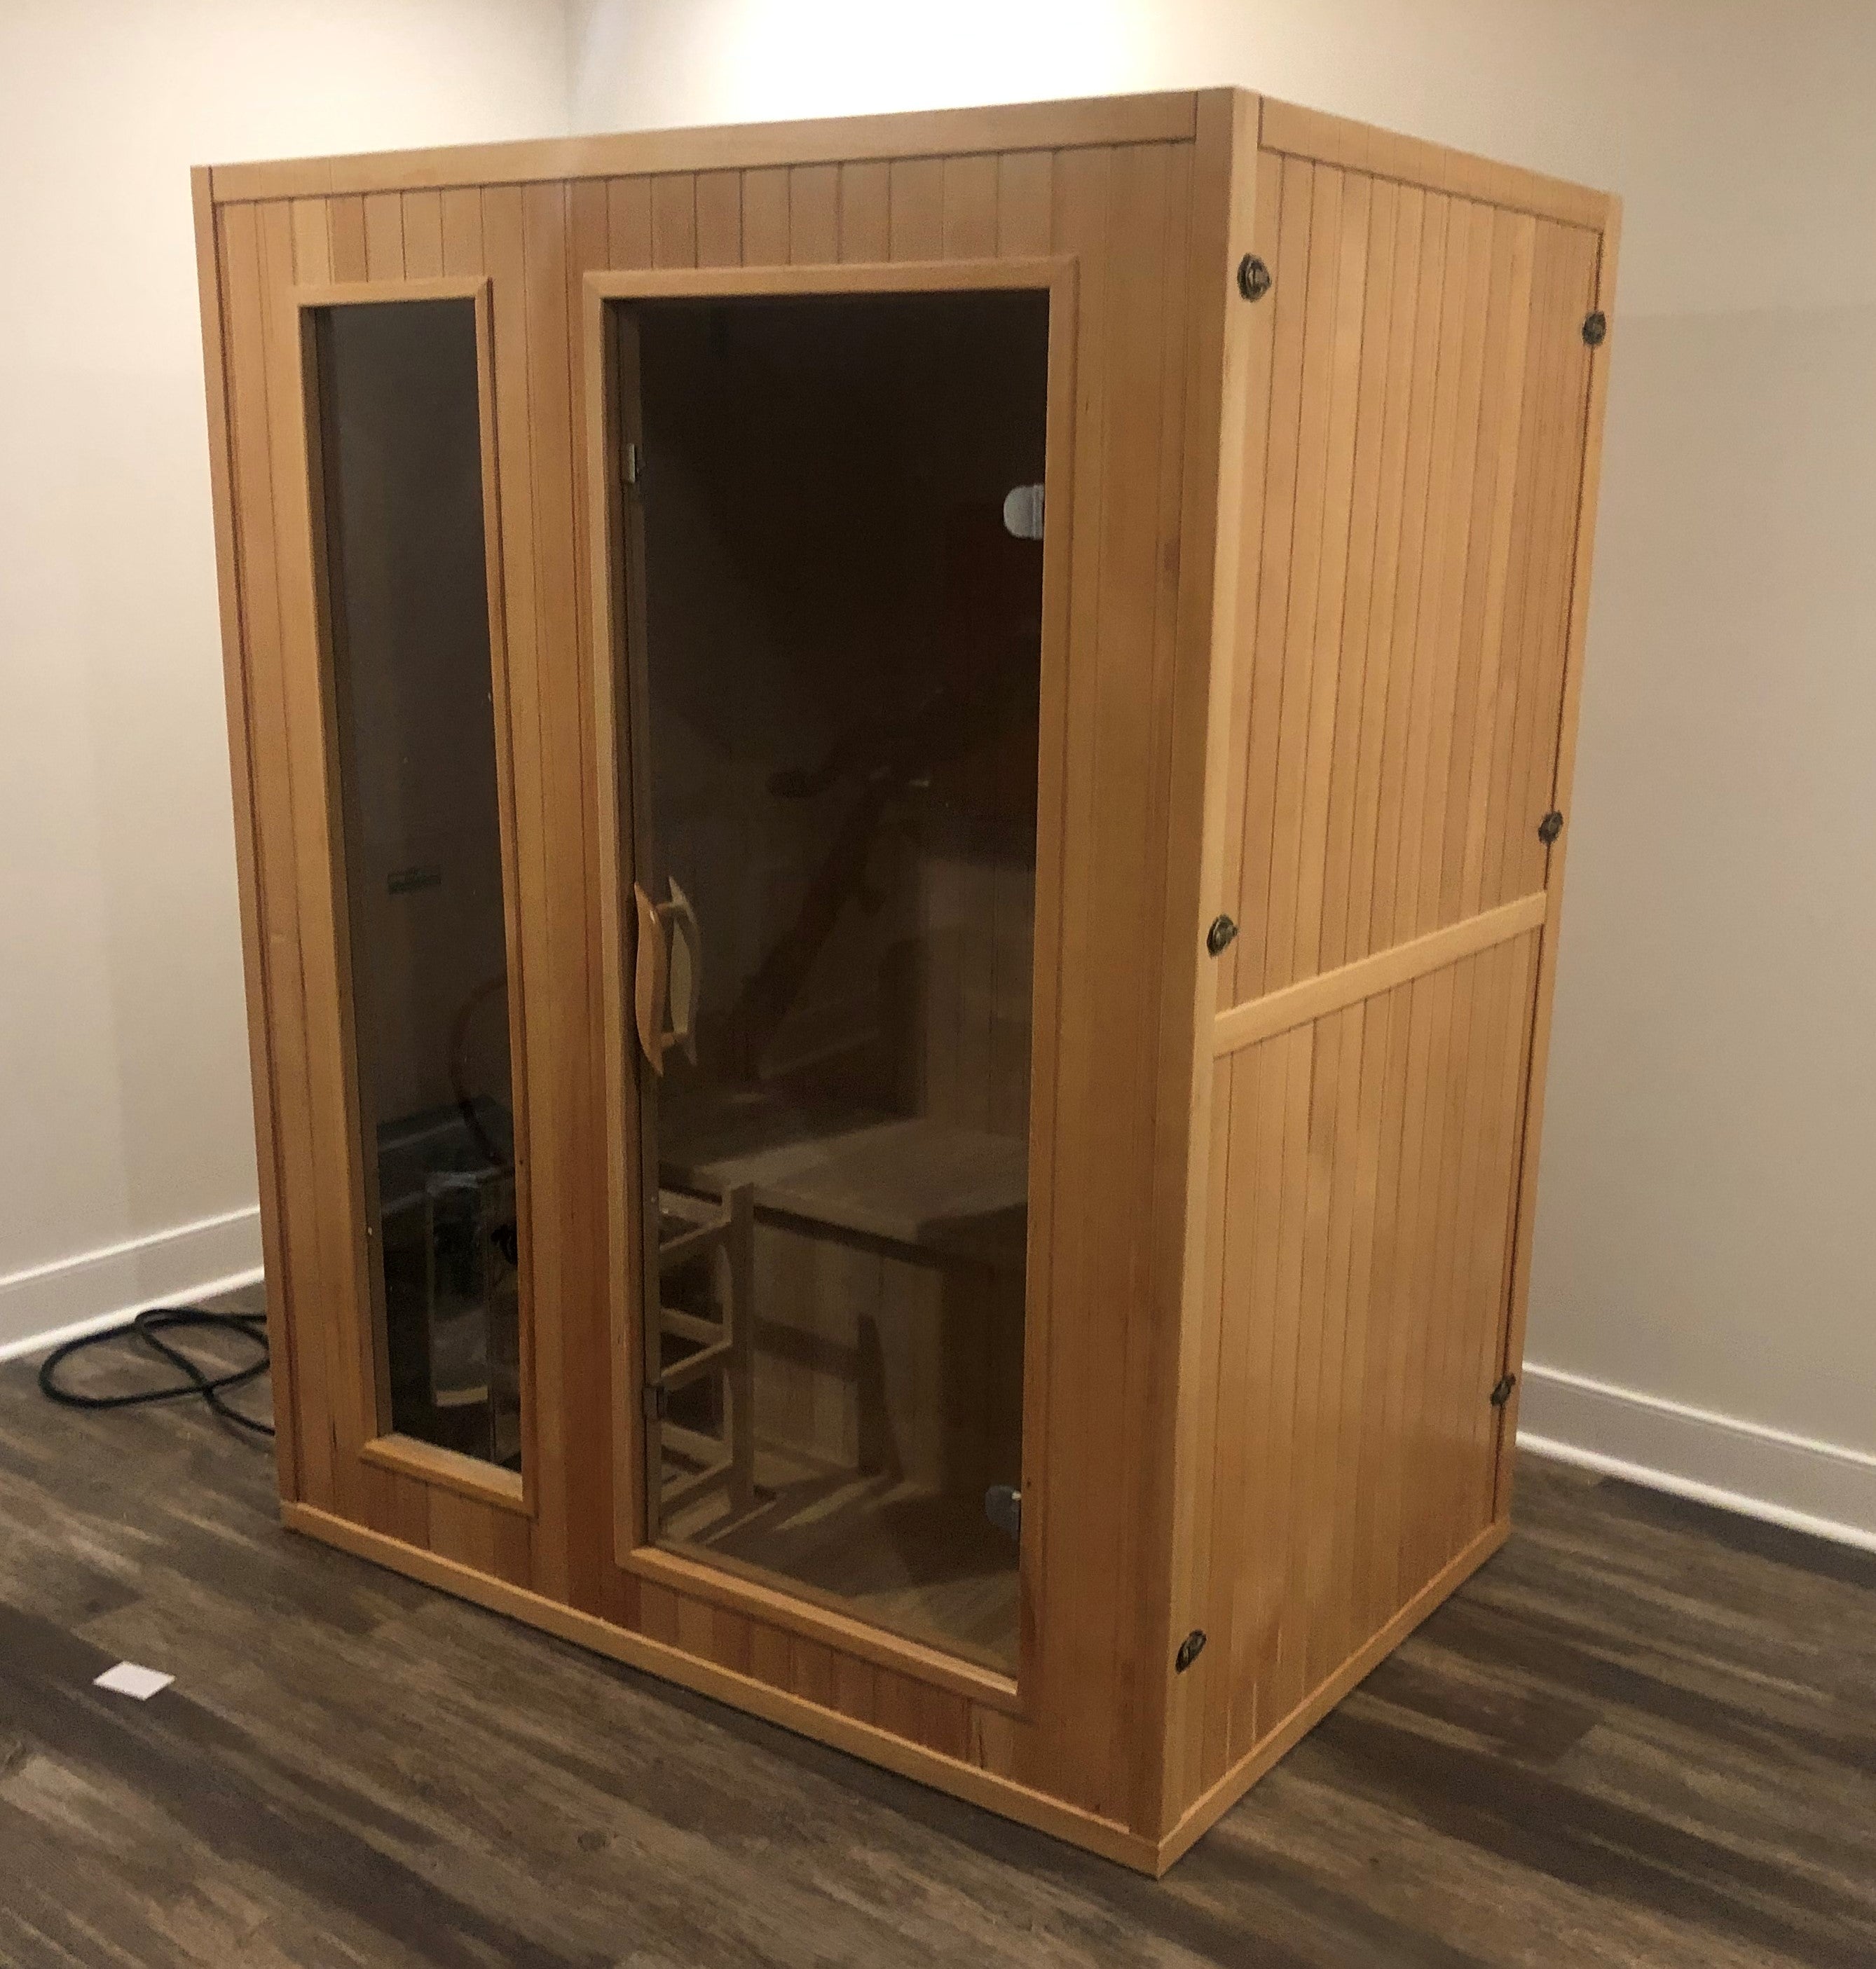 2 Person Indoor Sauna